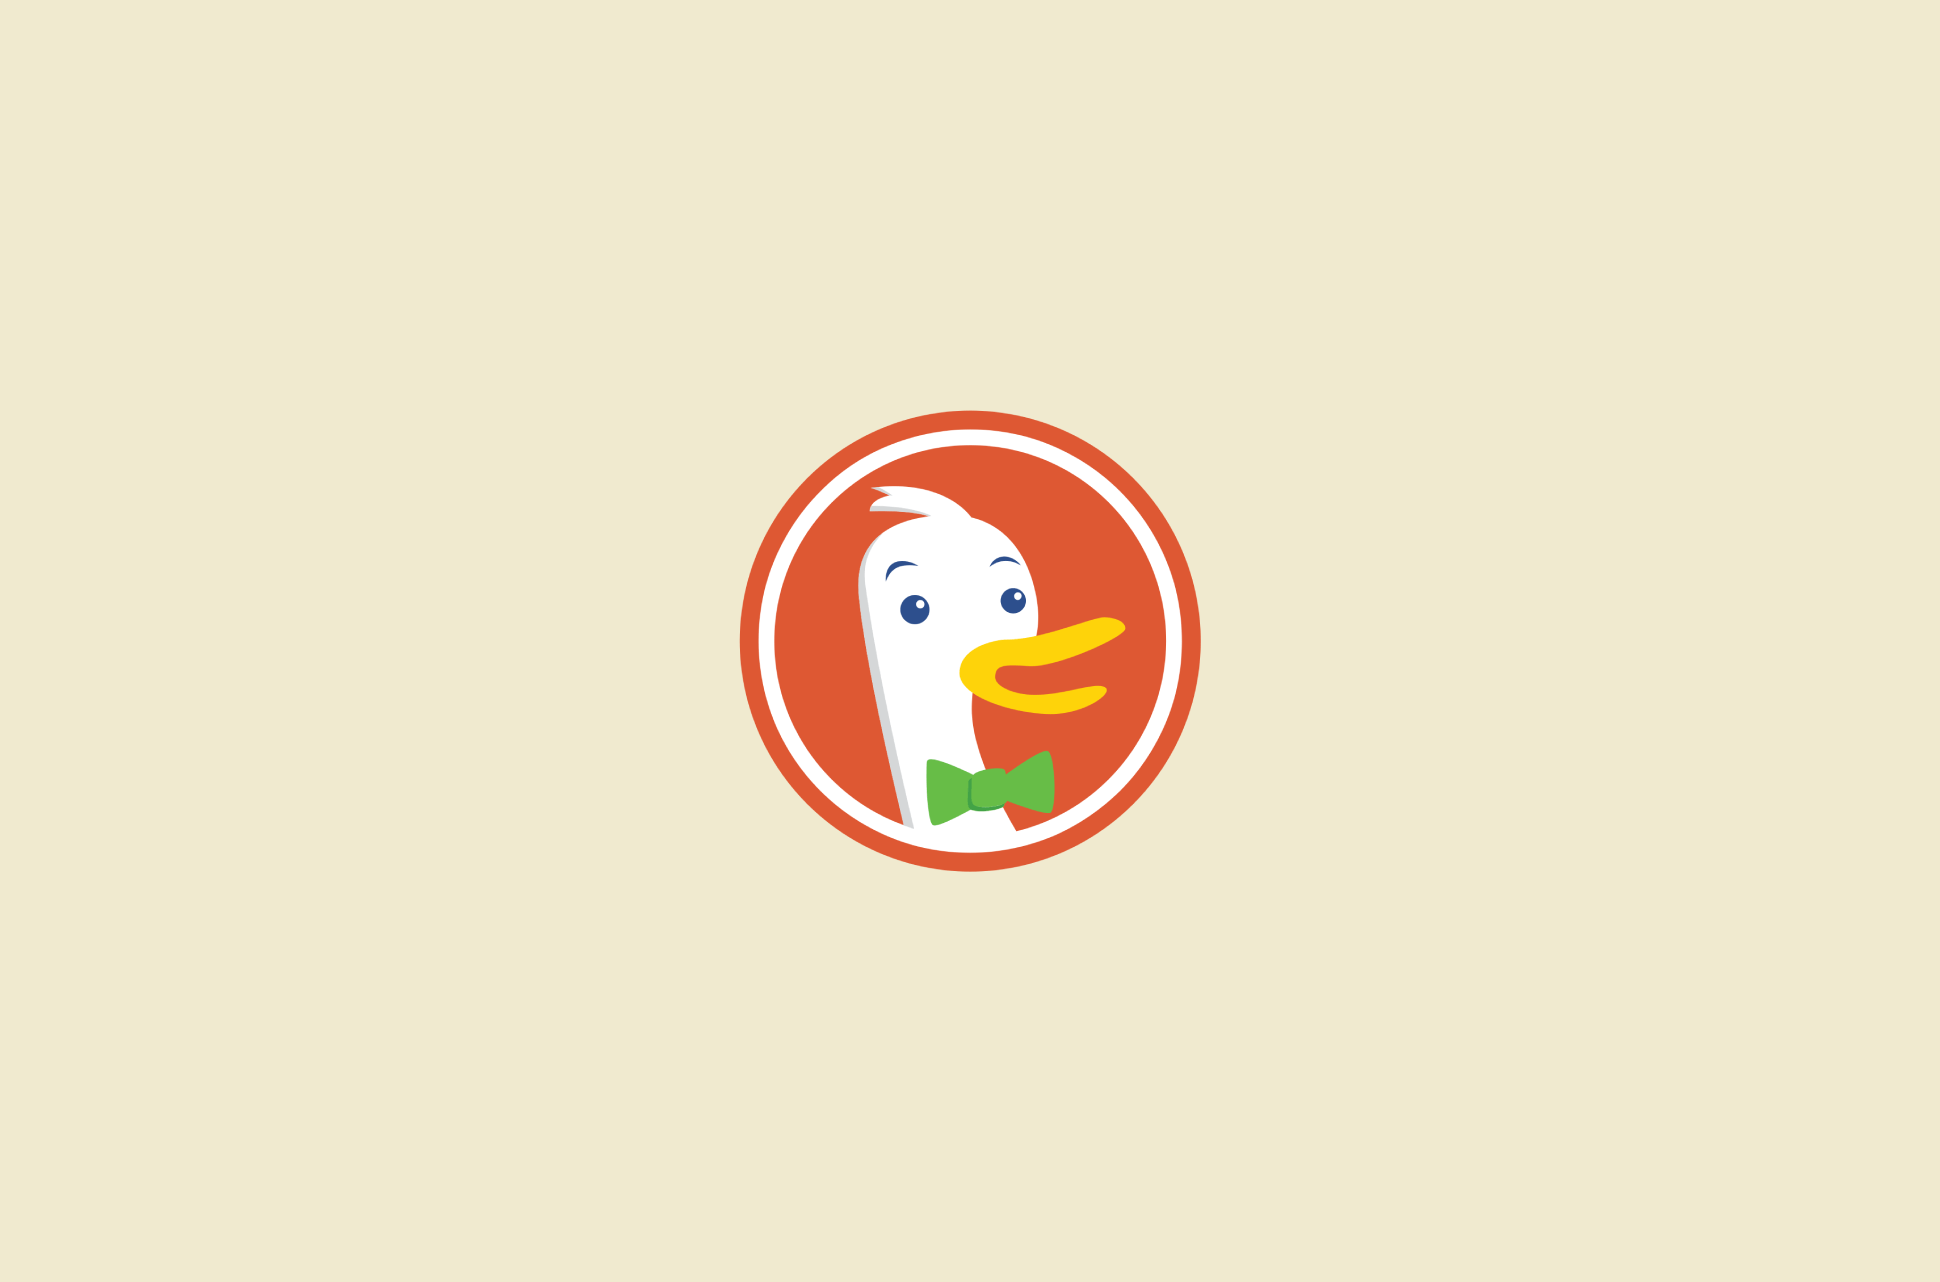 logo do DuckDuckGo.